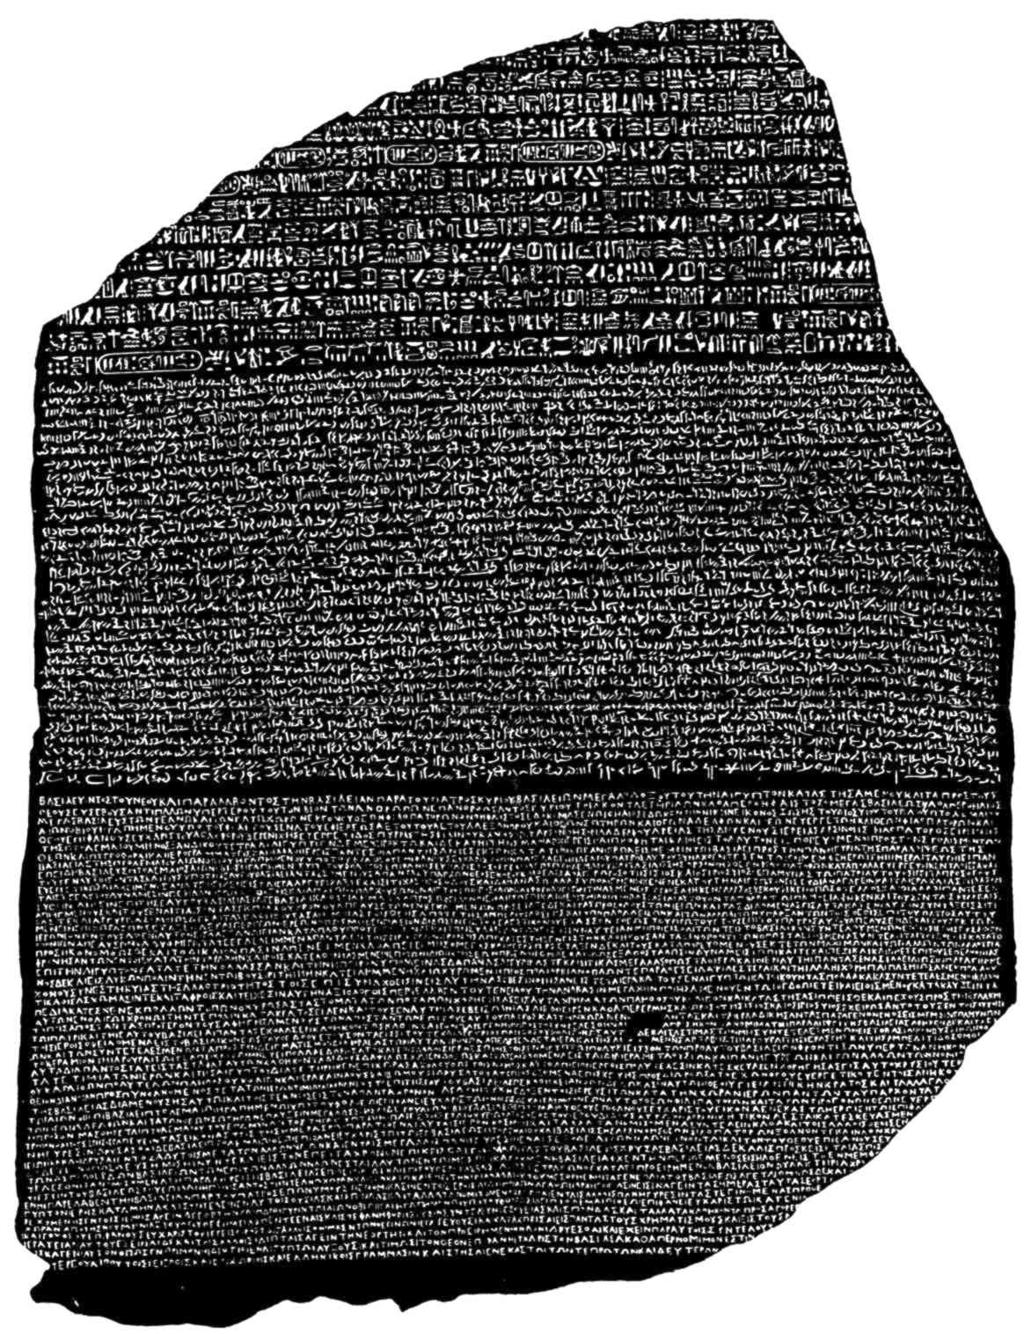 Auf dem Stein findet man Texte in drei Schriften: in Hieroglyphen, in demotischer Schrift und auf Altgriechisch in griechischen Großbuchstaben. Abbildung 3.